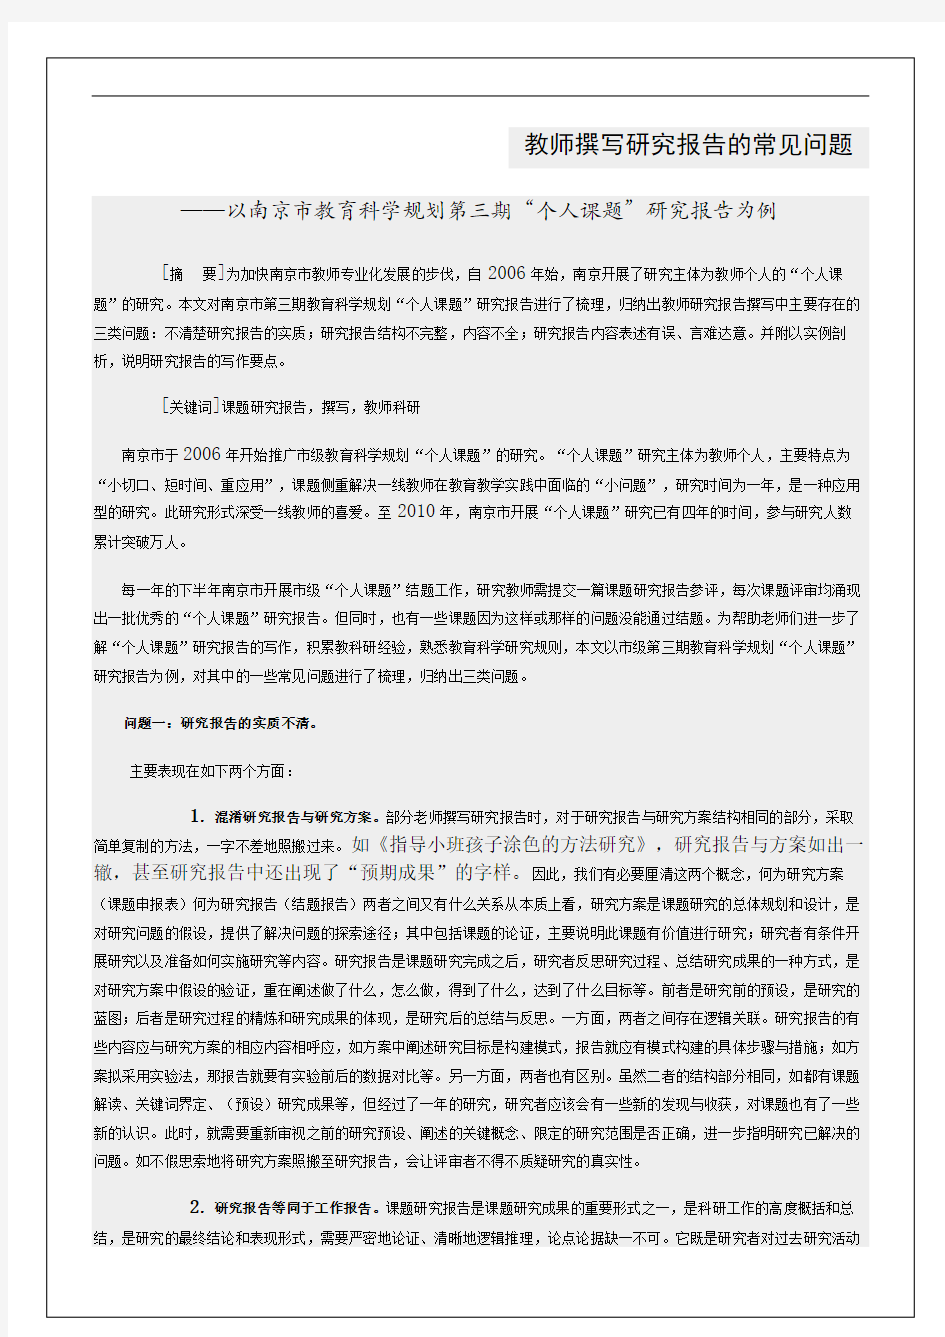 南京市教育科学规划第三期个人课题研究报告为例教师撰写研究报告的常见问题完整版